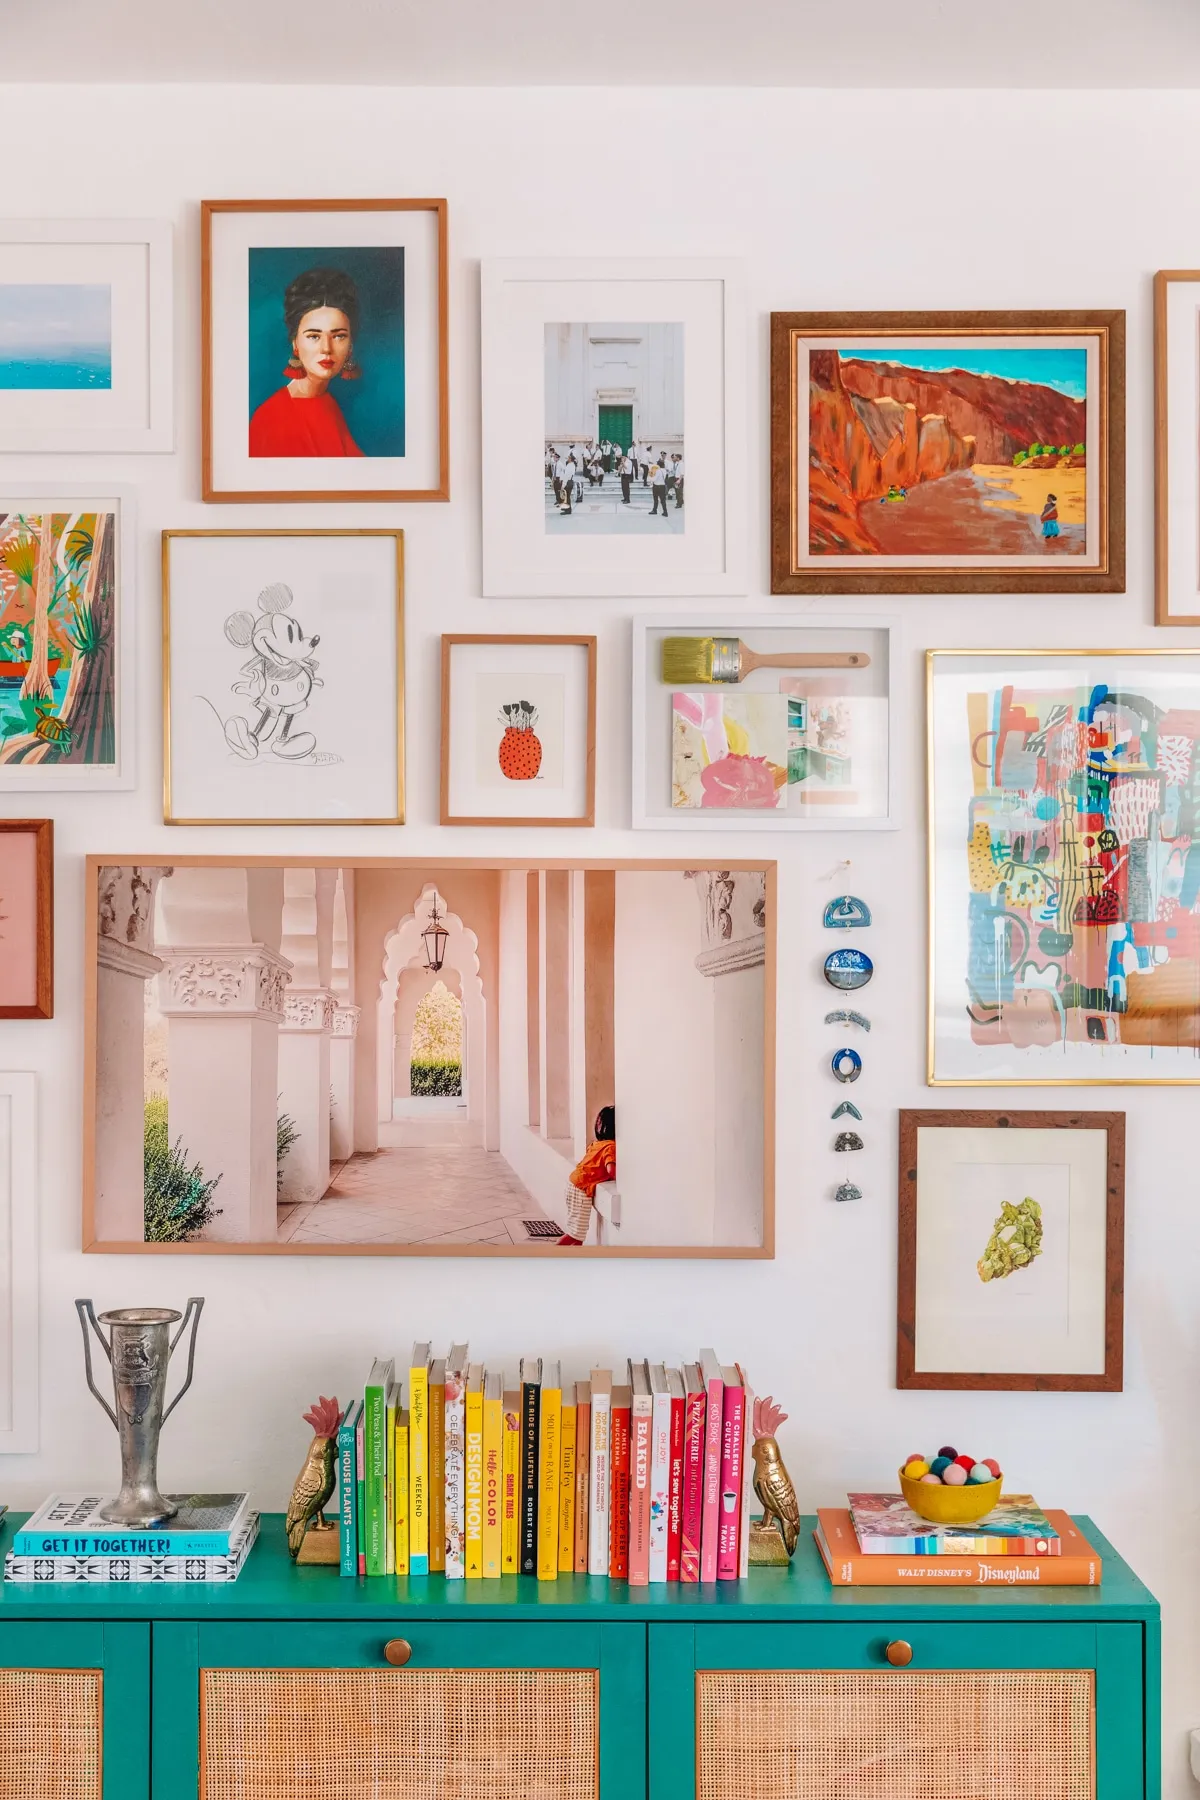 Tạo một bức tường phòng trưng bày với nghệ thuật bất ngờ Simpson gợi ý: “Hãy thu thập các tác phẩm nghệ thuật hoặc phụ kiện yêu thích của bạn từ khắp nơi trong nhà và sắp xếp chúng theo một cách độc đáo để tạo ra một bức tường trưng bày. “Điều này thực sự sẽ tạo ra tác động và thêm tính năng chiều vào không gian của bạn.”